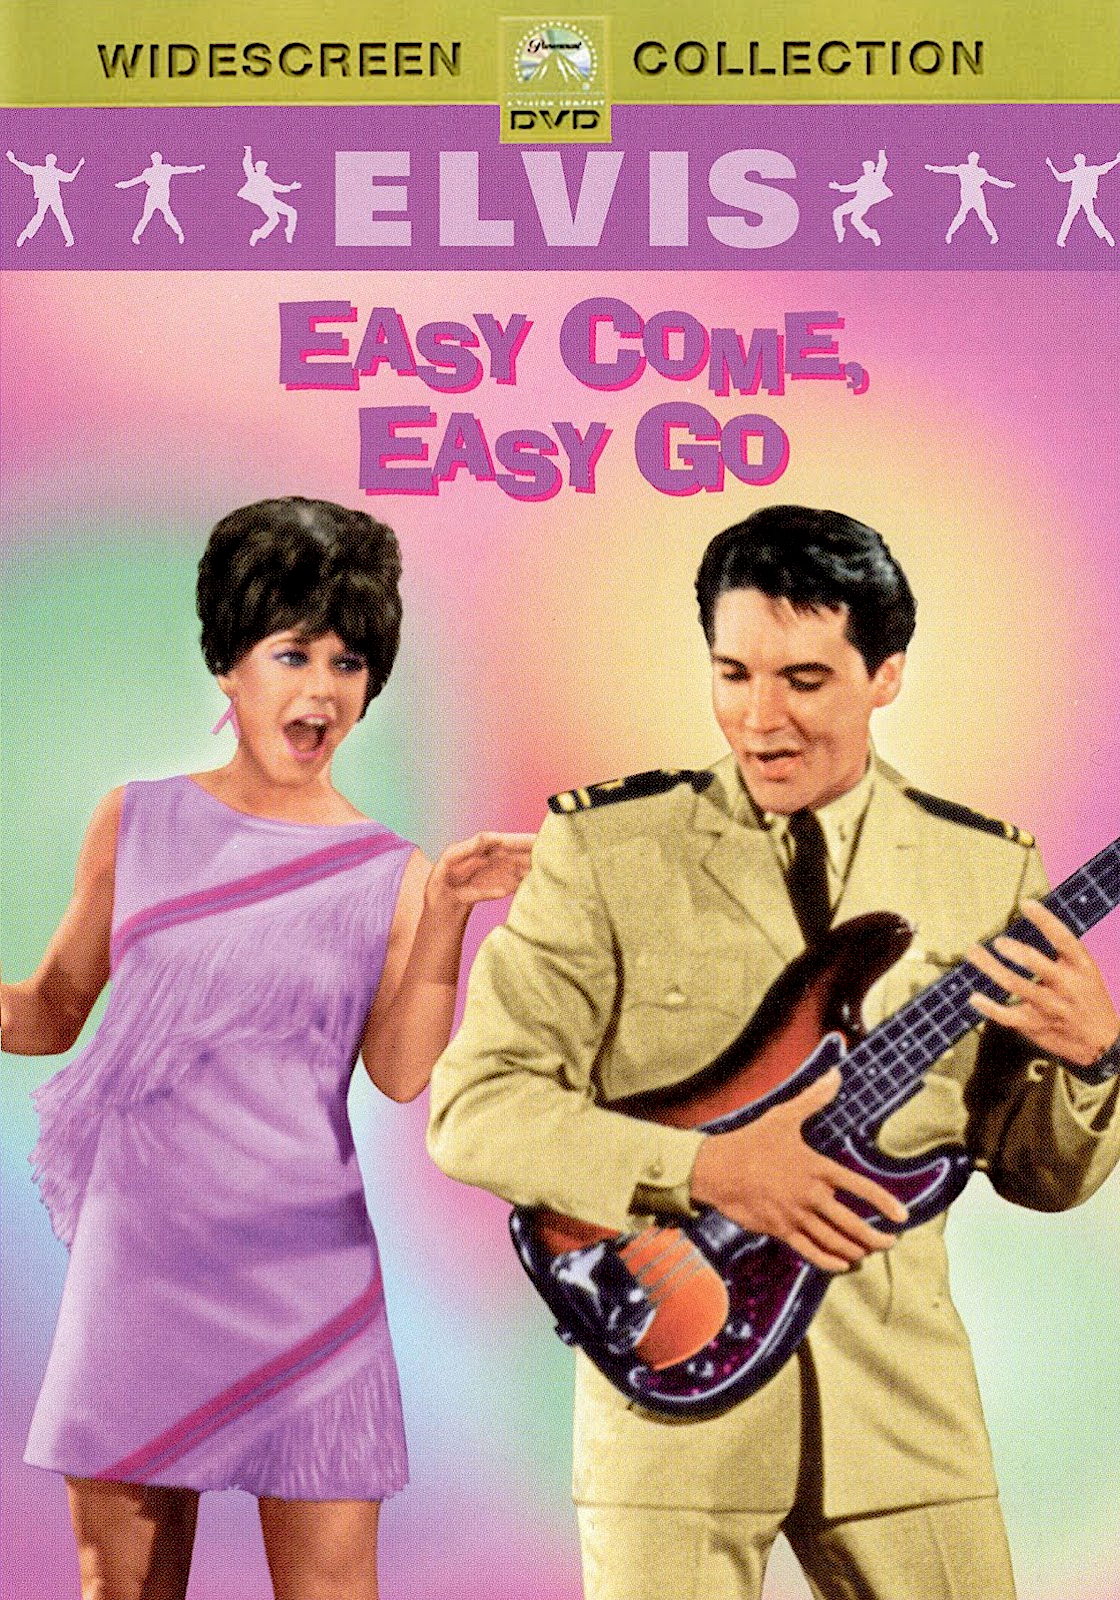 Все что легко пришло. Easy come easy go. Постеры к фильму легко пришло,легко ушло 1967. Легко пришло легко ушло.